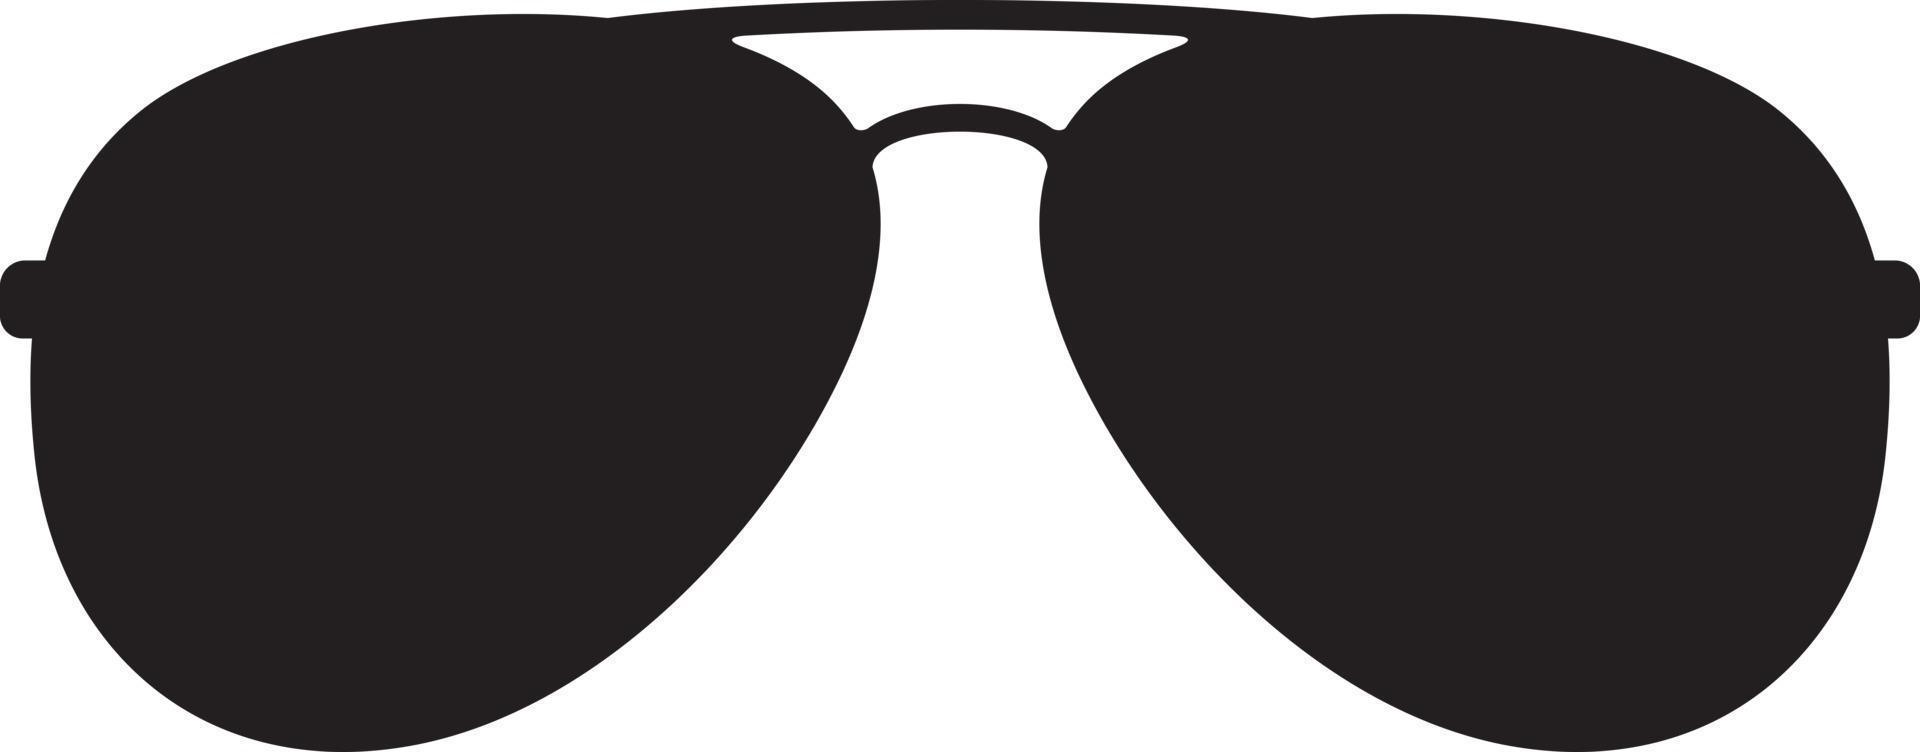 gafas de sol estilo aviador negras vector